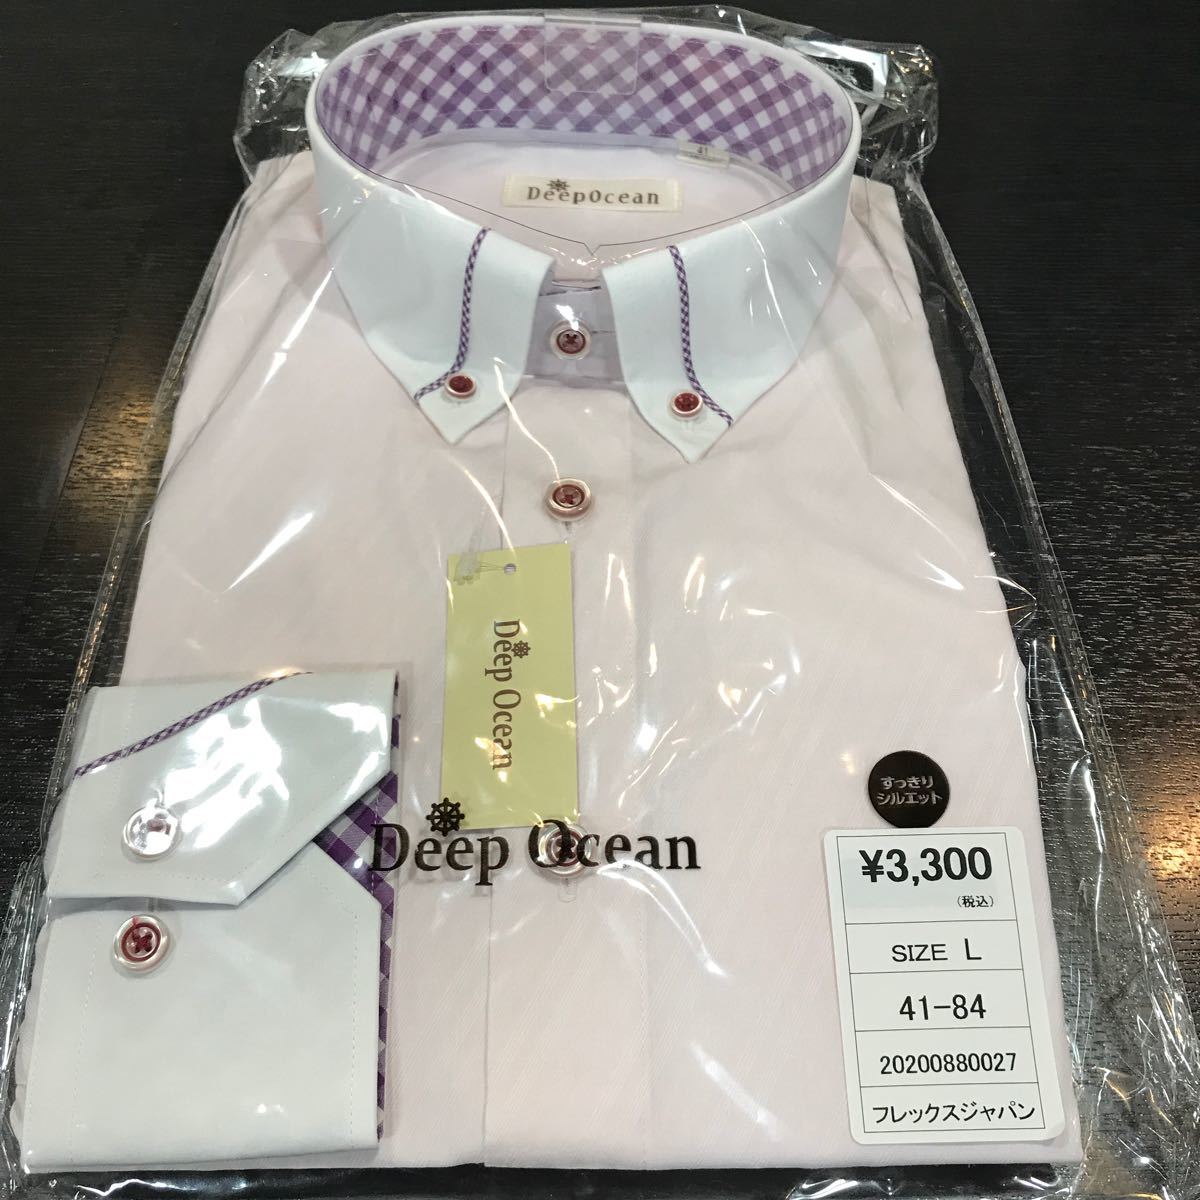 ディープオーシャンワイシャツ☆41-84クレリックピンク長袖形態安定サイズL